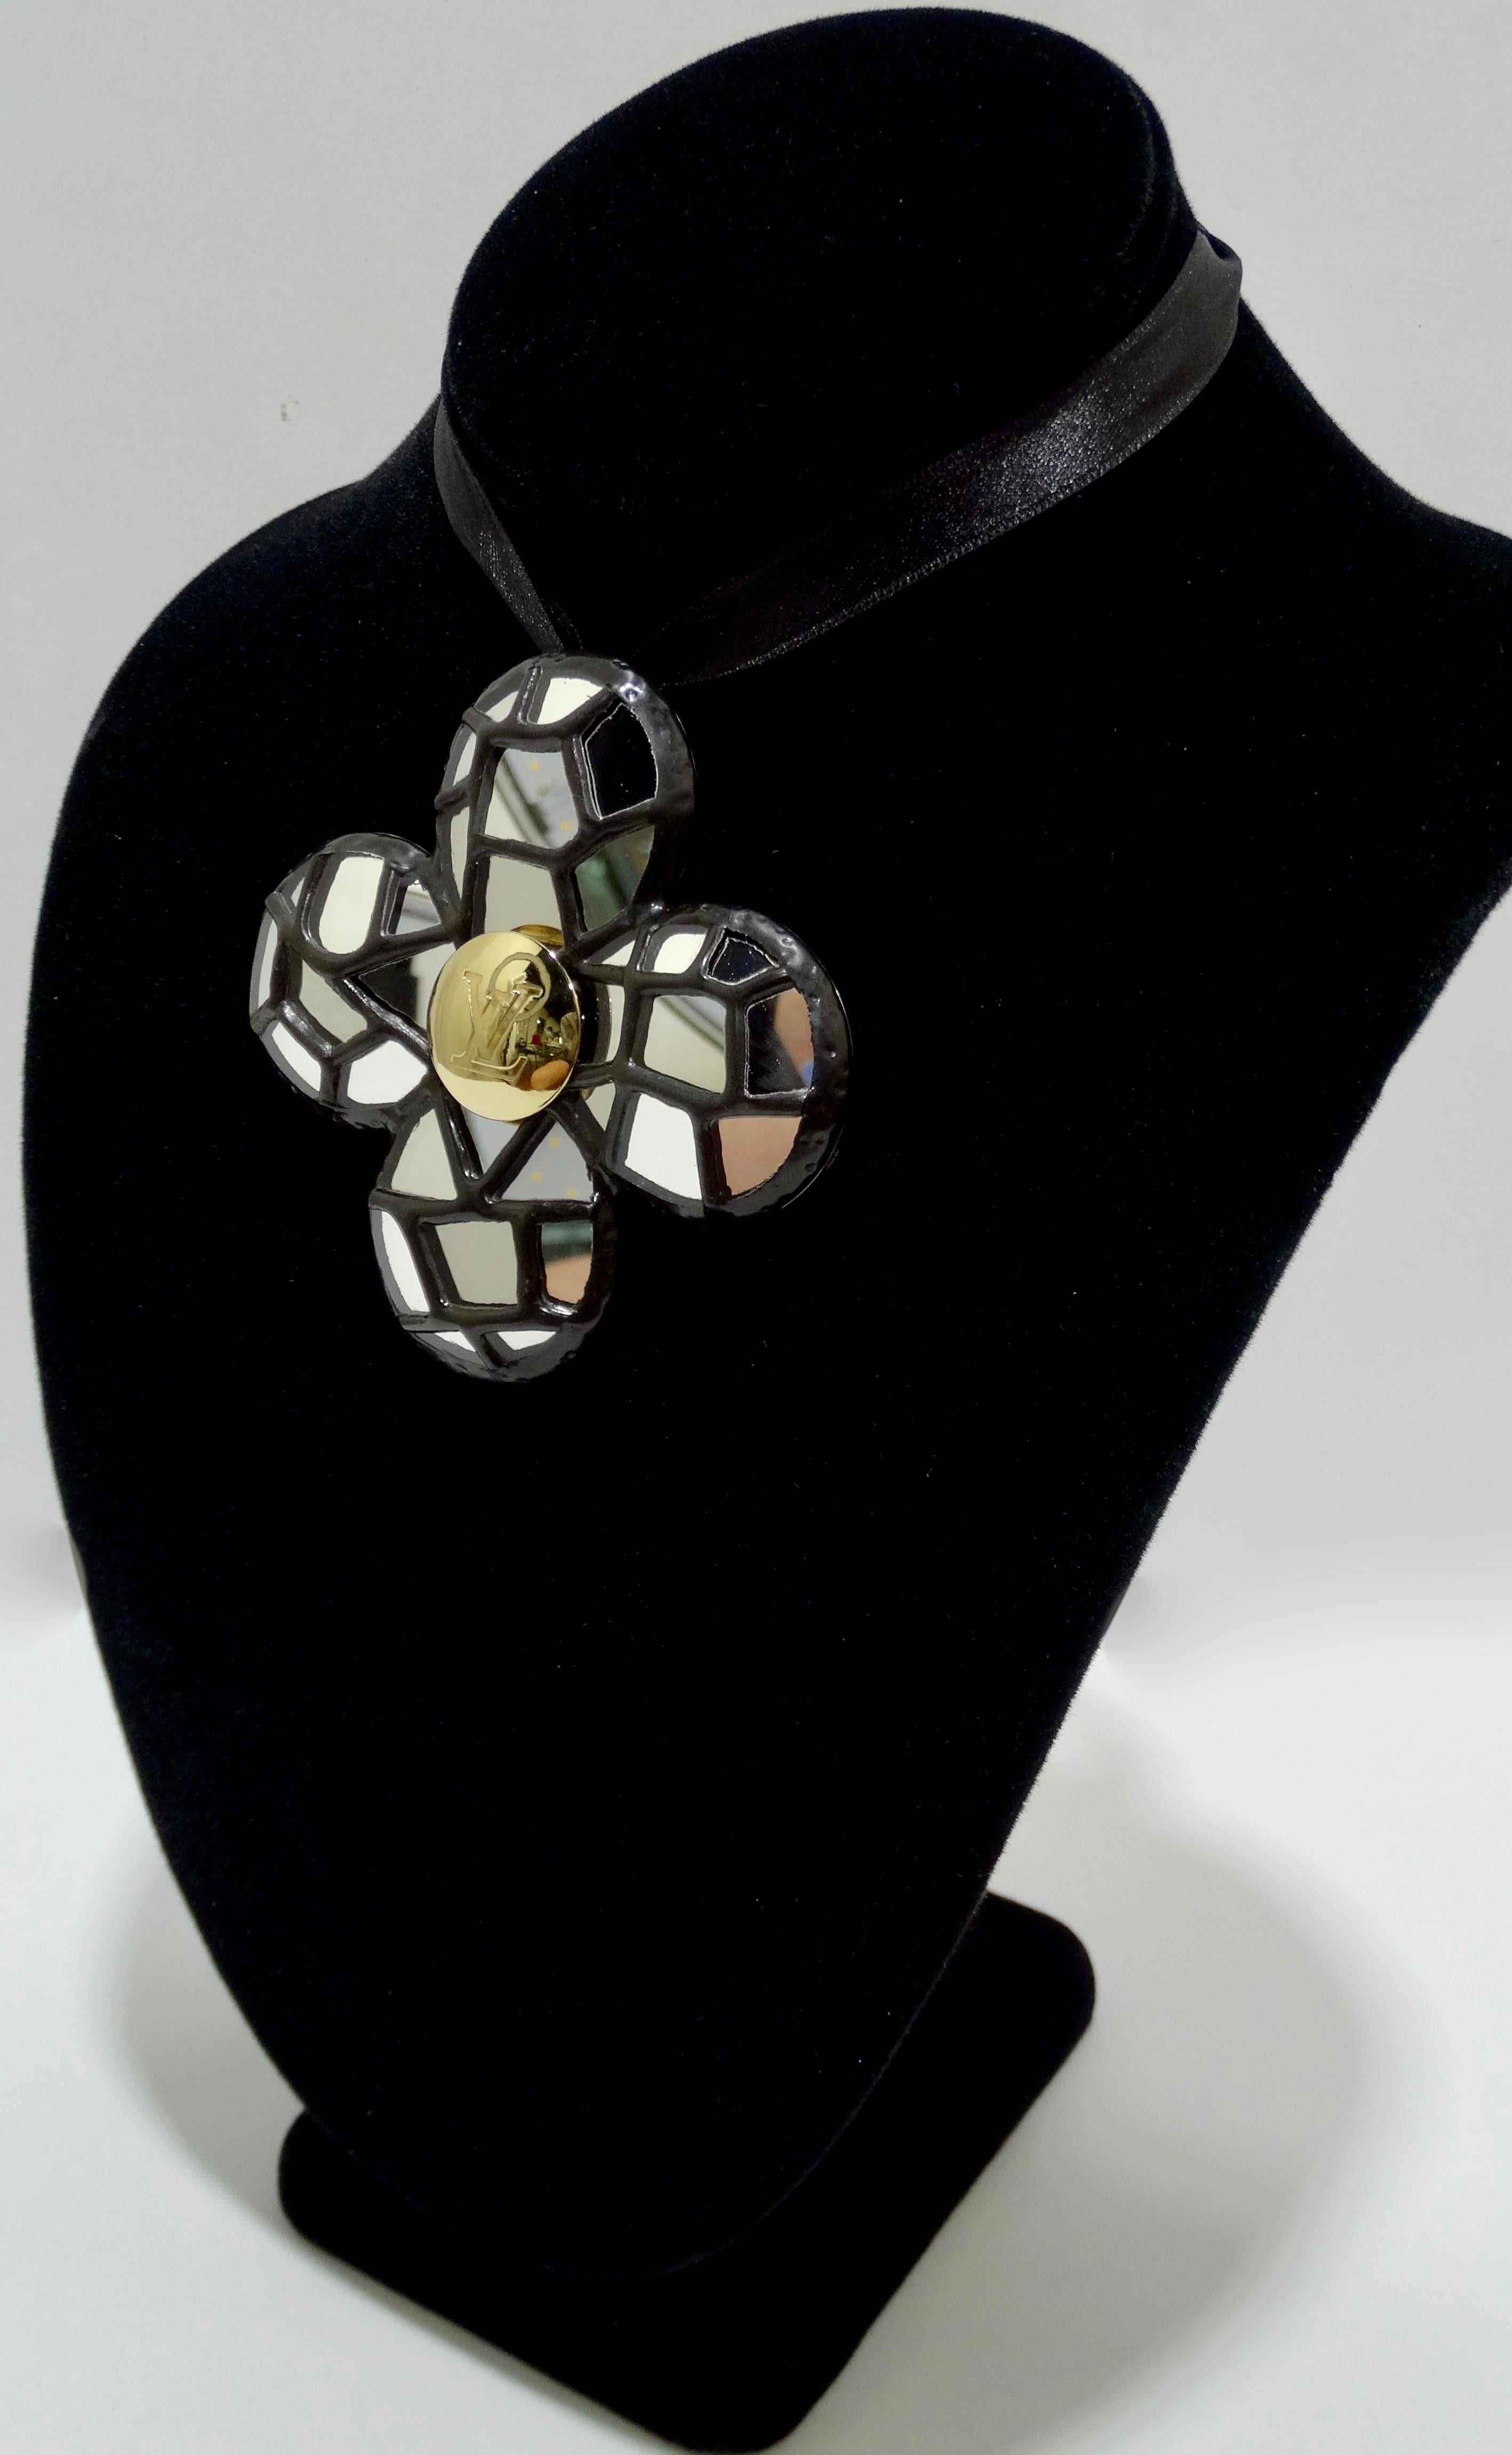 Cette broche/pendentif Louis Vuitton rehausse l'ensemble de votre look ! Circa 21st Century, cette broche/pendentif quadrilobe en acier présente une façade en mosaïque réfléchissante avec, au centre, un emblème LV plaqué or. Le dos comprend une